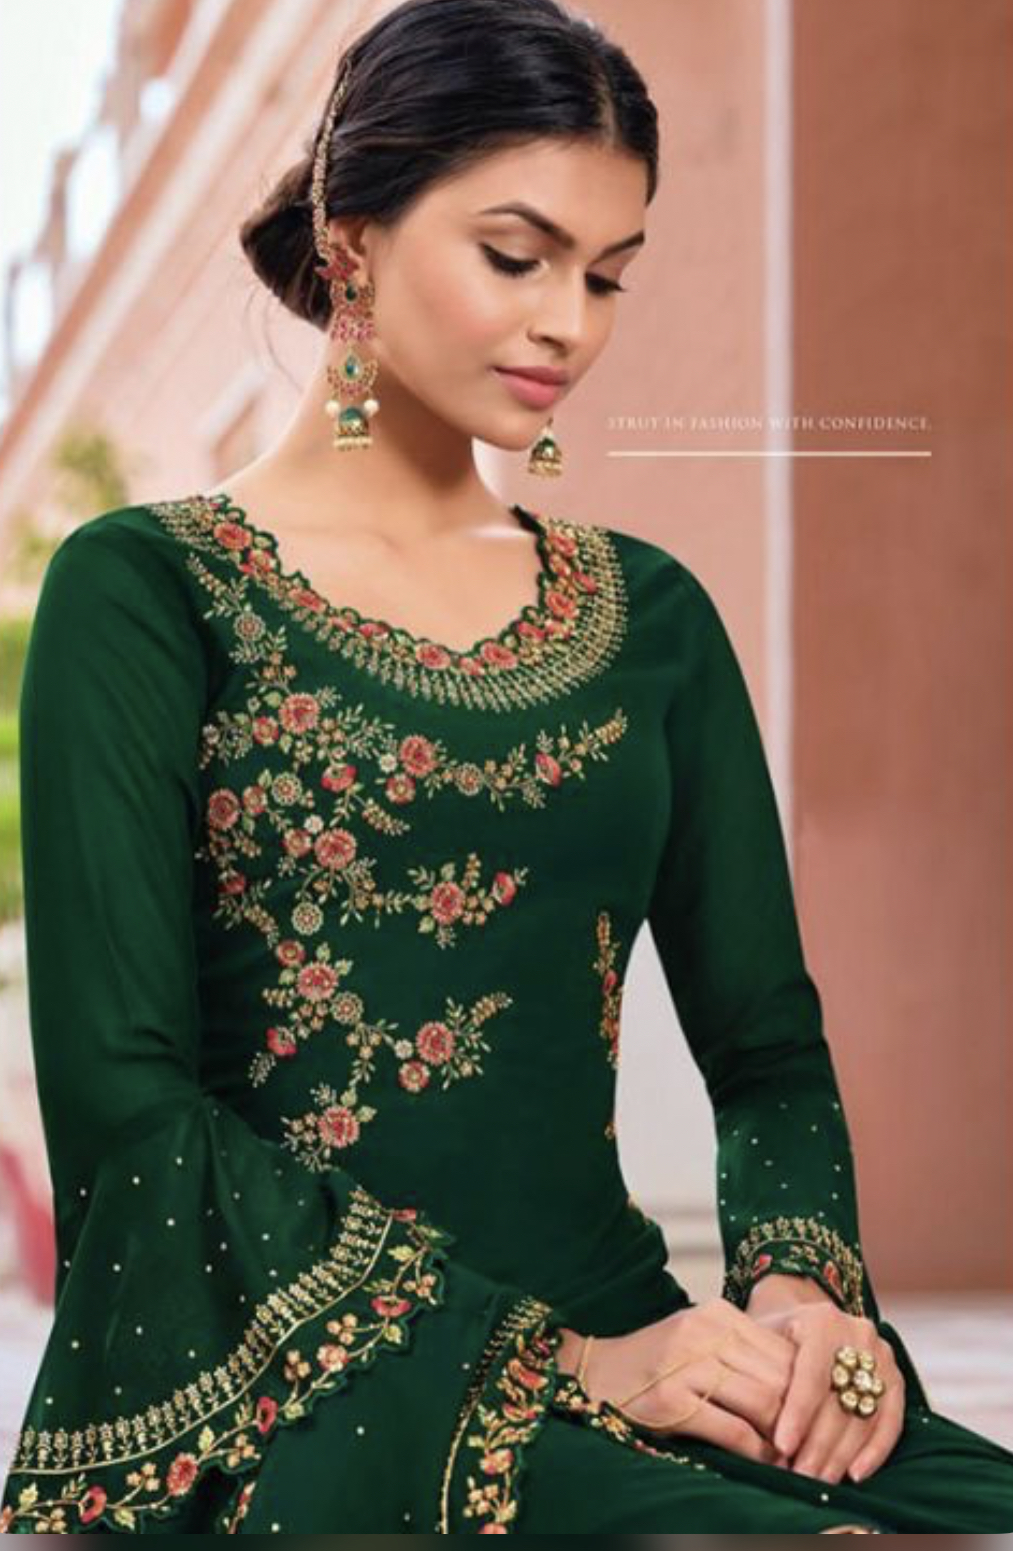 Green Embroidered Pant Kameez - Salwar Kameez, top 20 salwar kameez ...